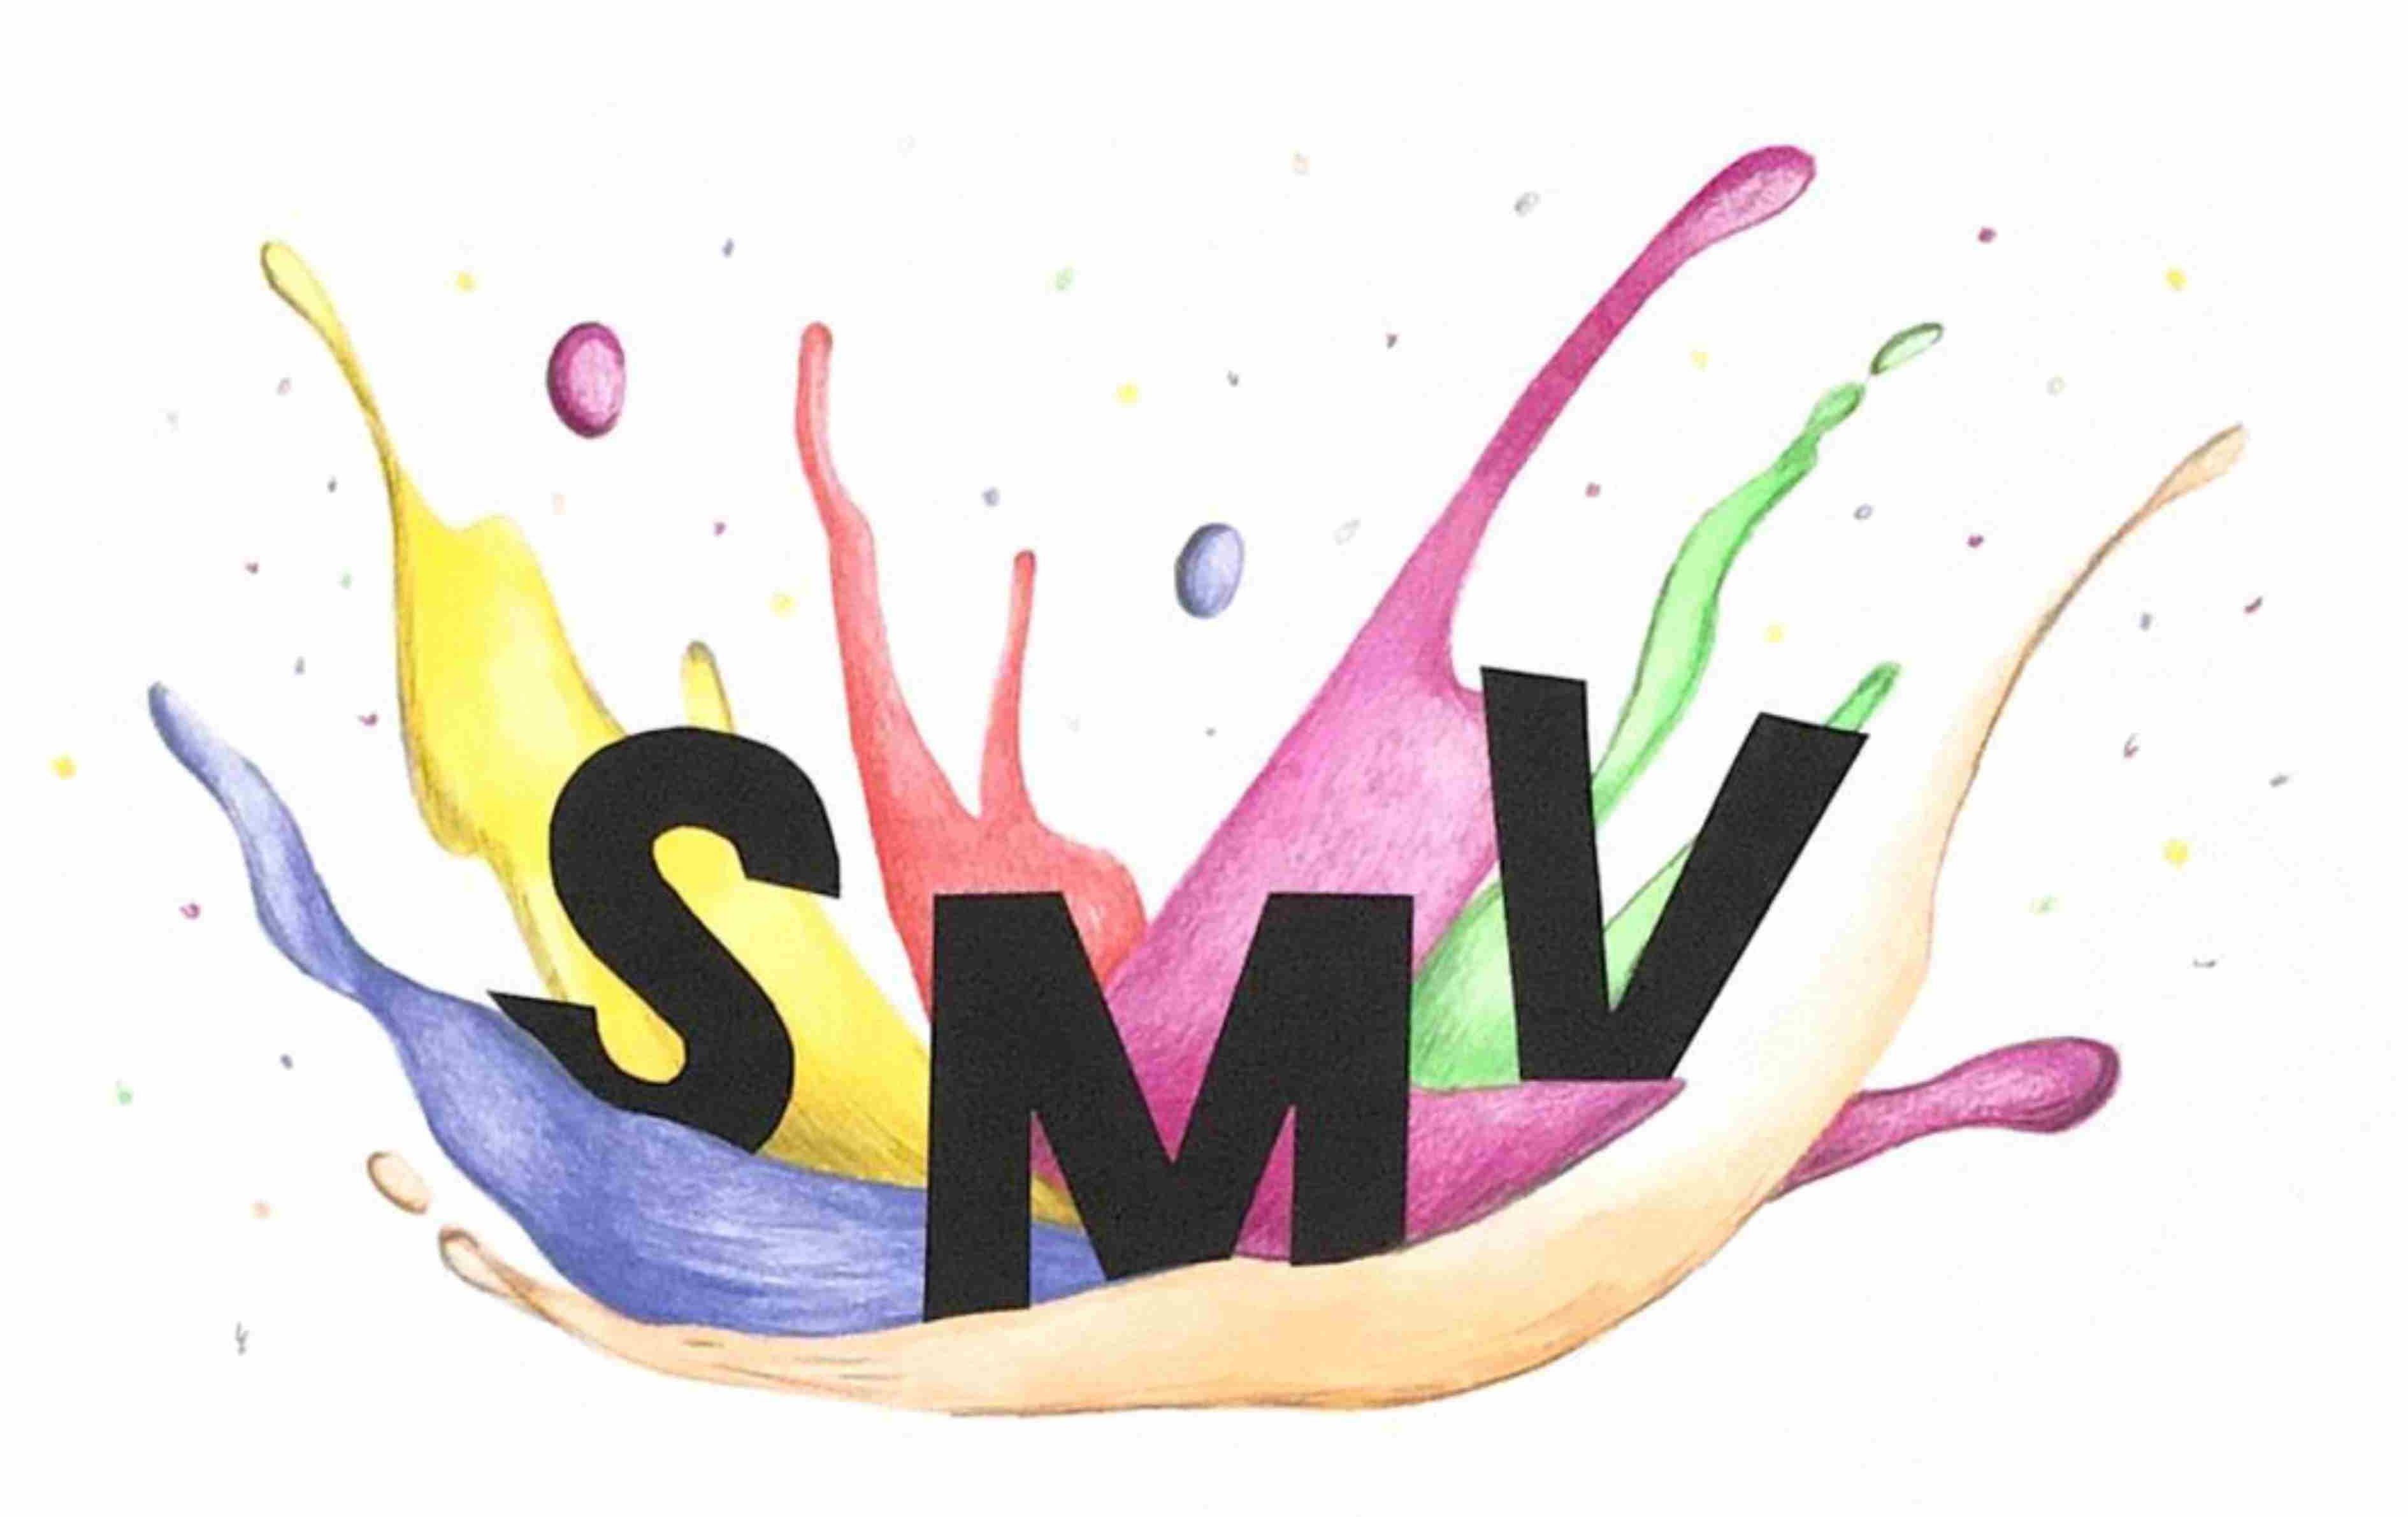 SMV Logo